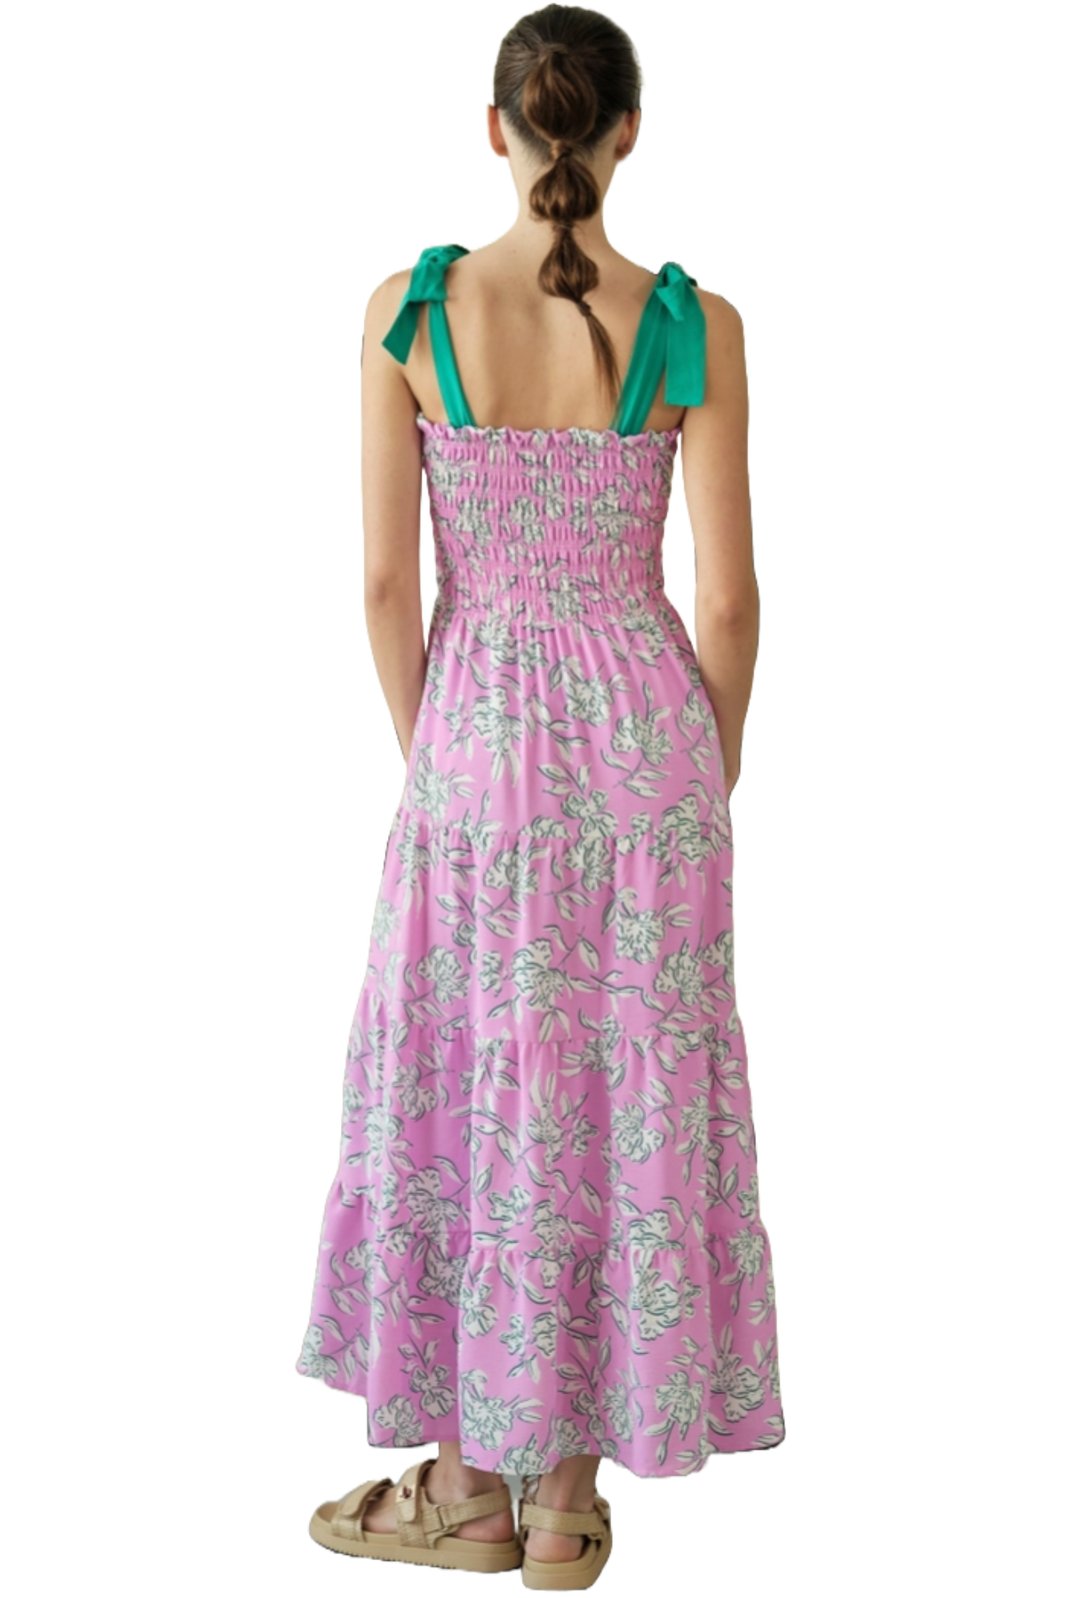 The Sabrina Maxi Dress